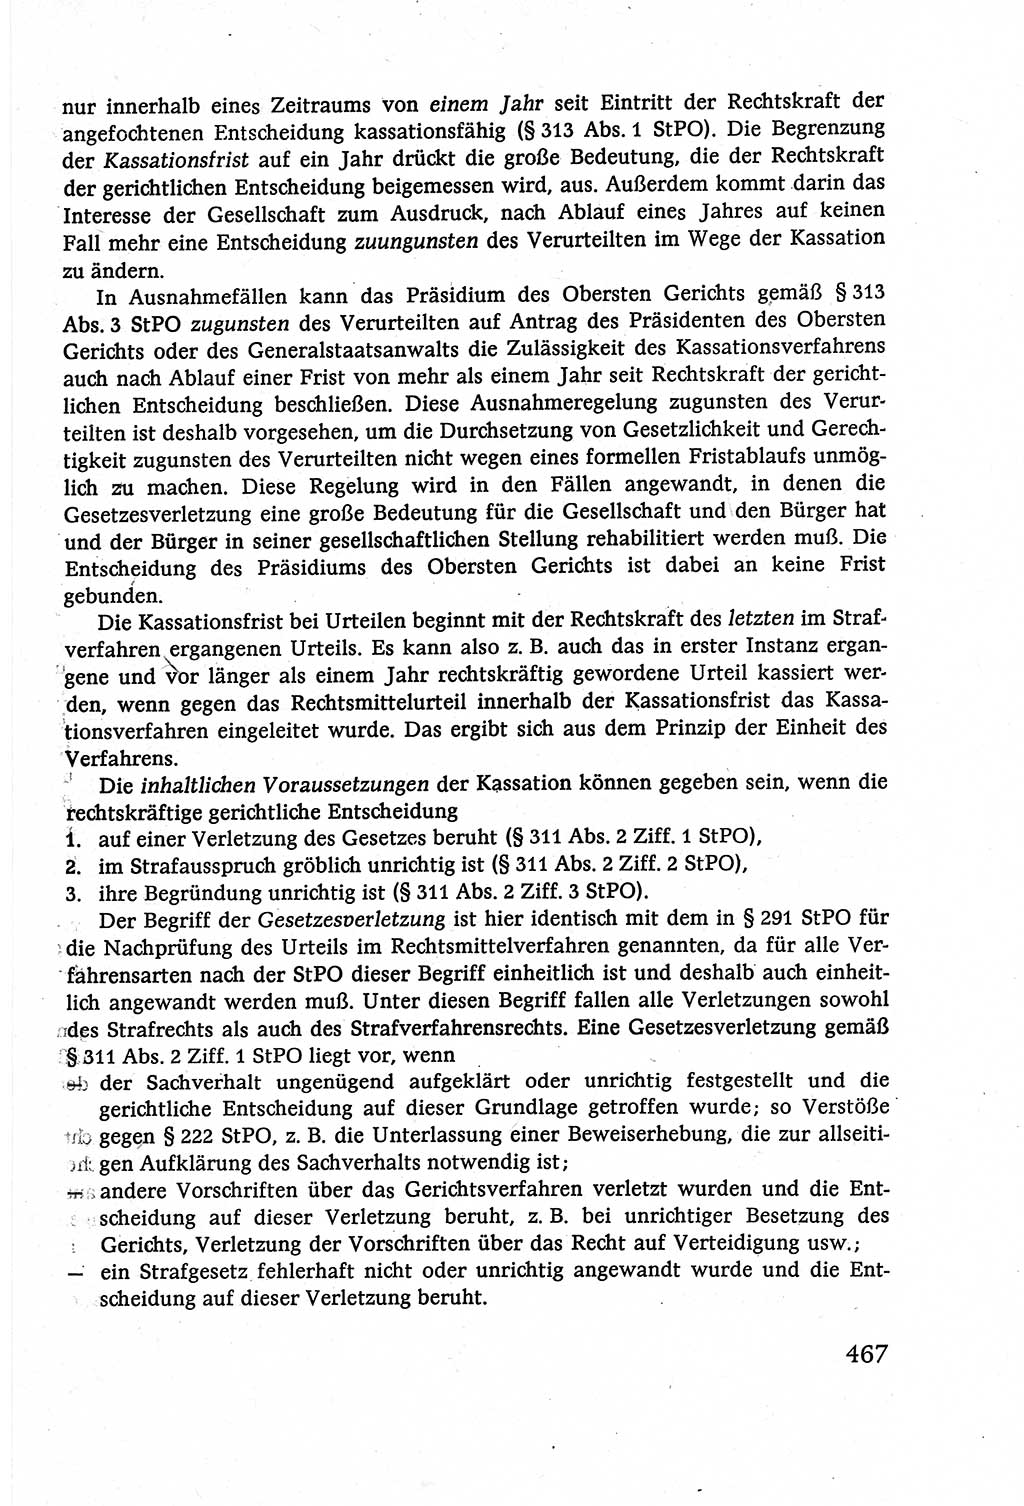 Strafverfahrensrecht [Deutsche Demokratische Republik (DDR)], Lehrbuch 1977, Seite 467 (Strafverf.-R. DDR Lb. 1977, S. 467)